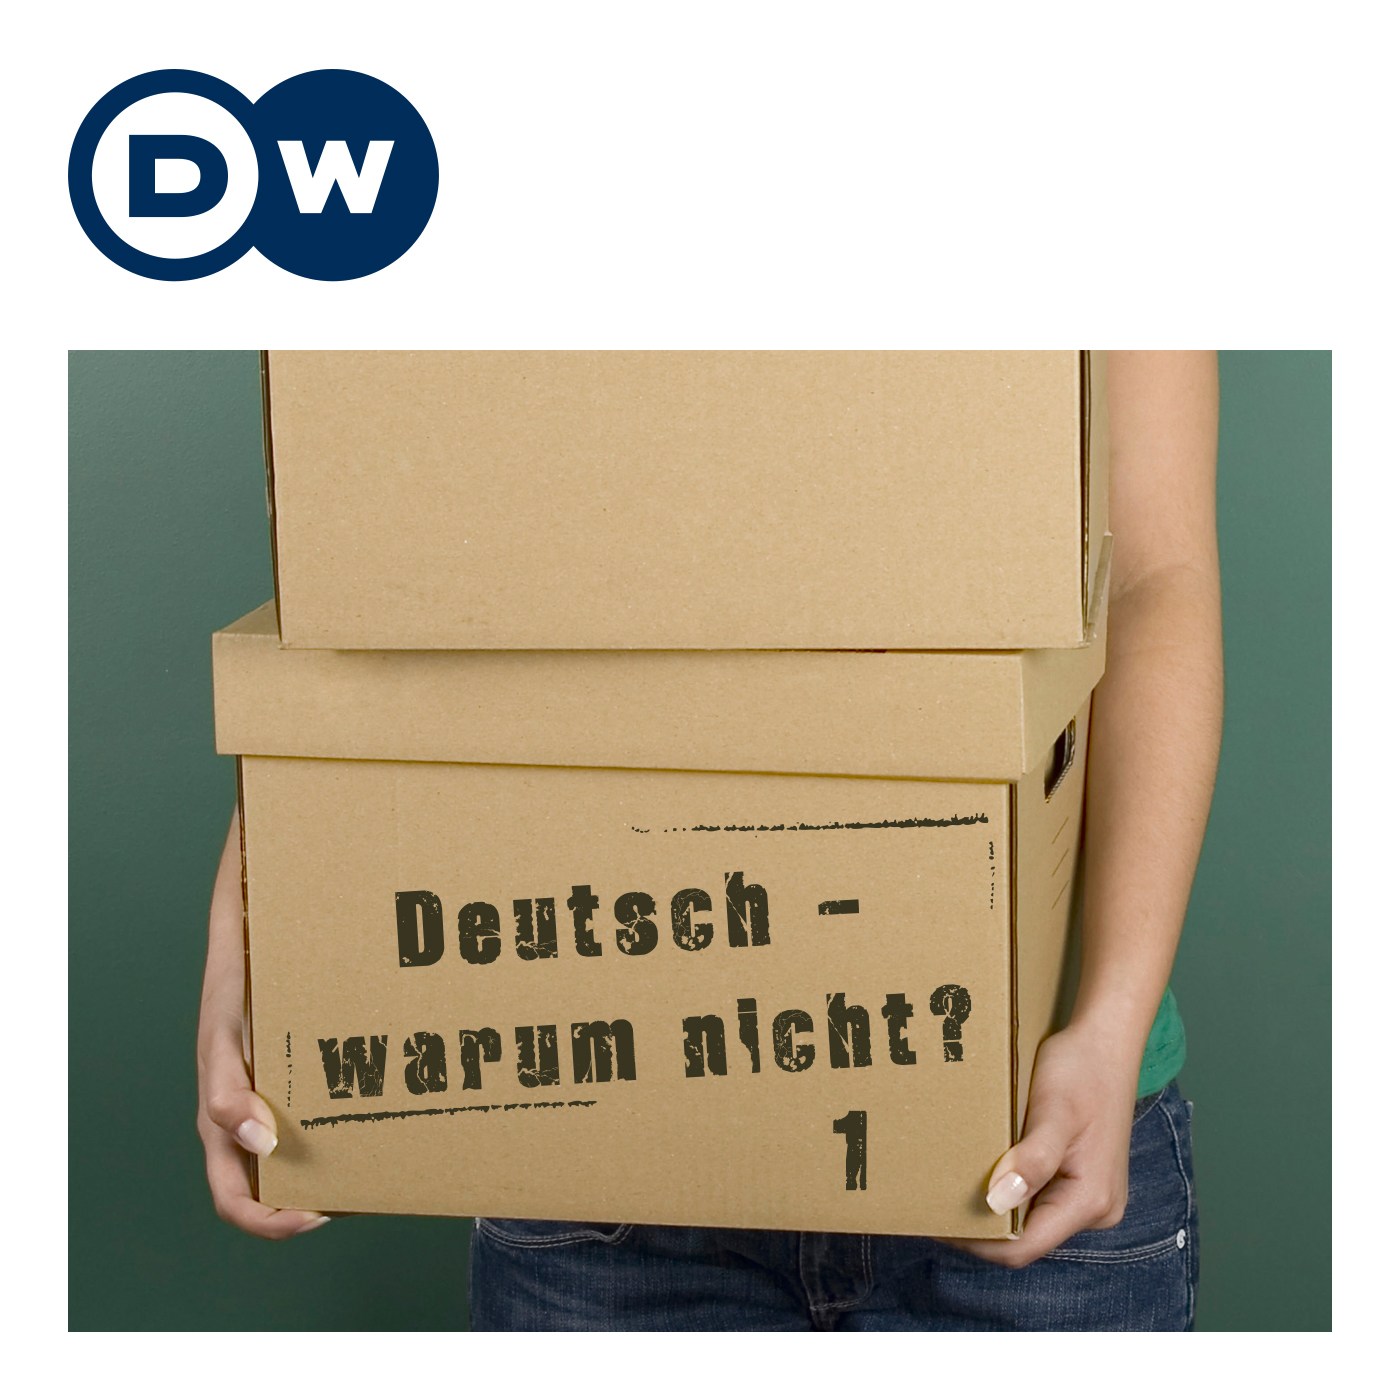 Deutsch warum nicht? Serija 1 | Uite njemaki | Deutsche Welle